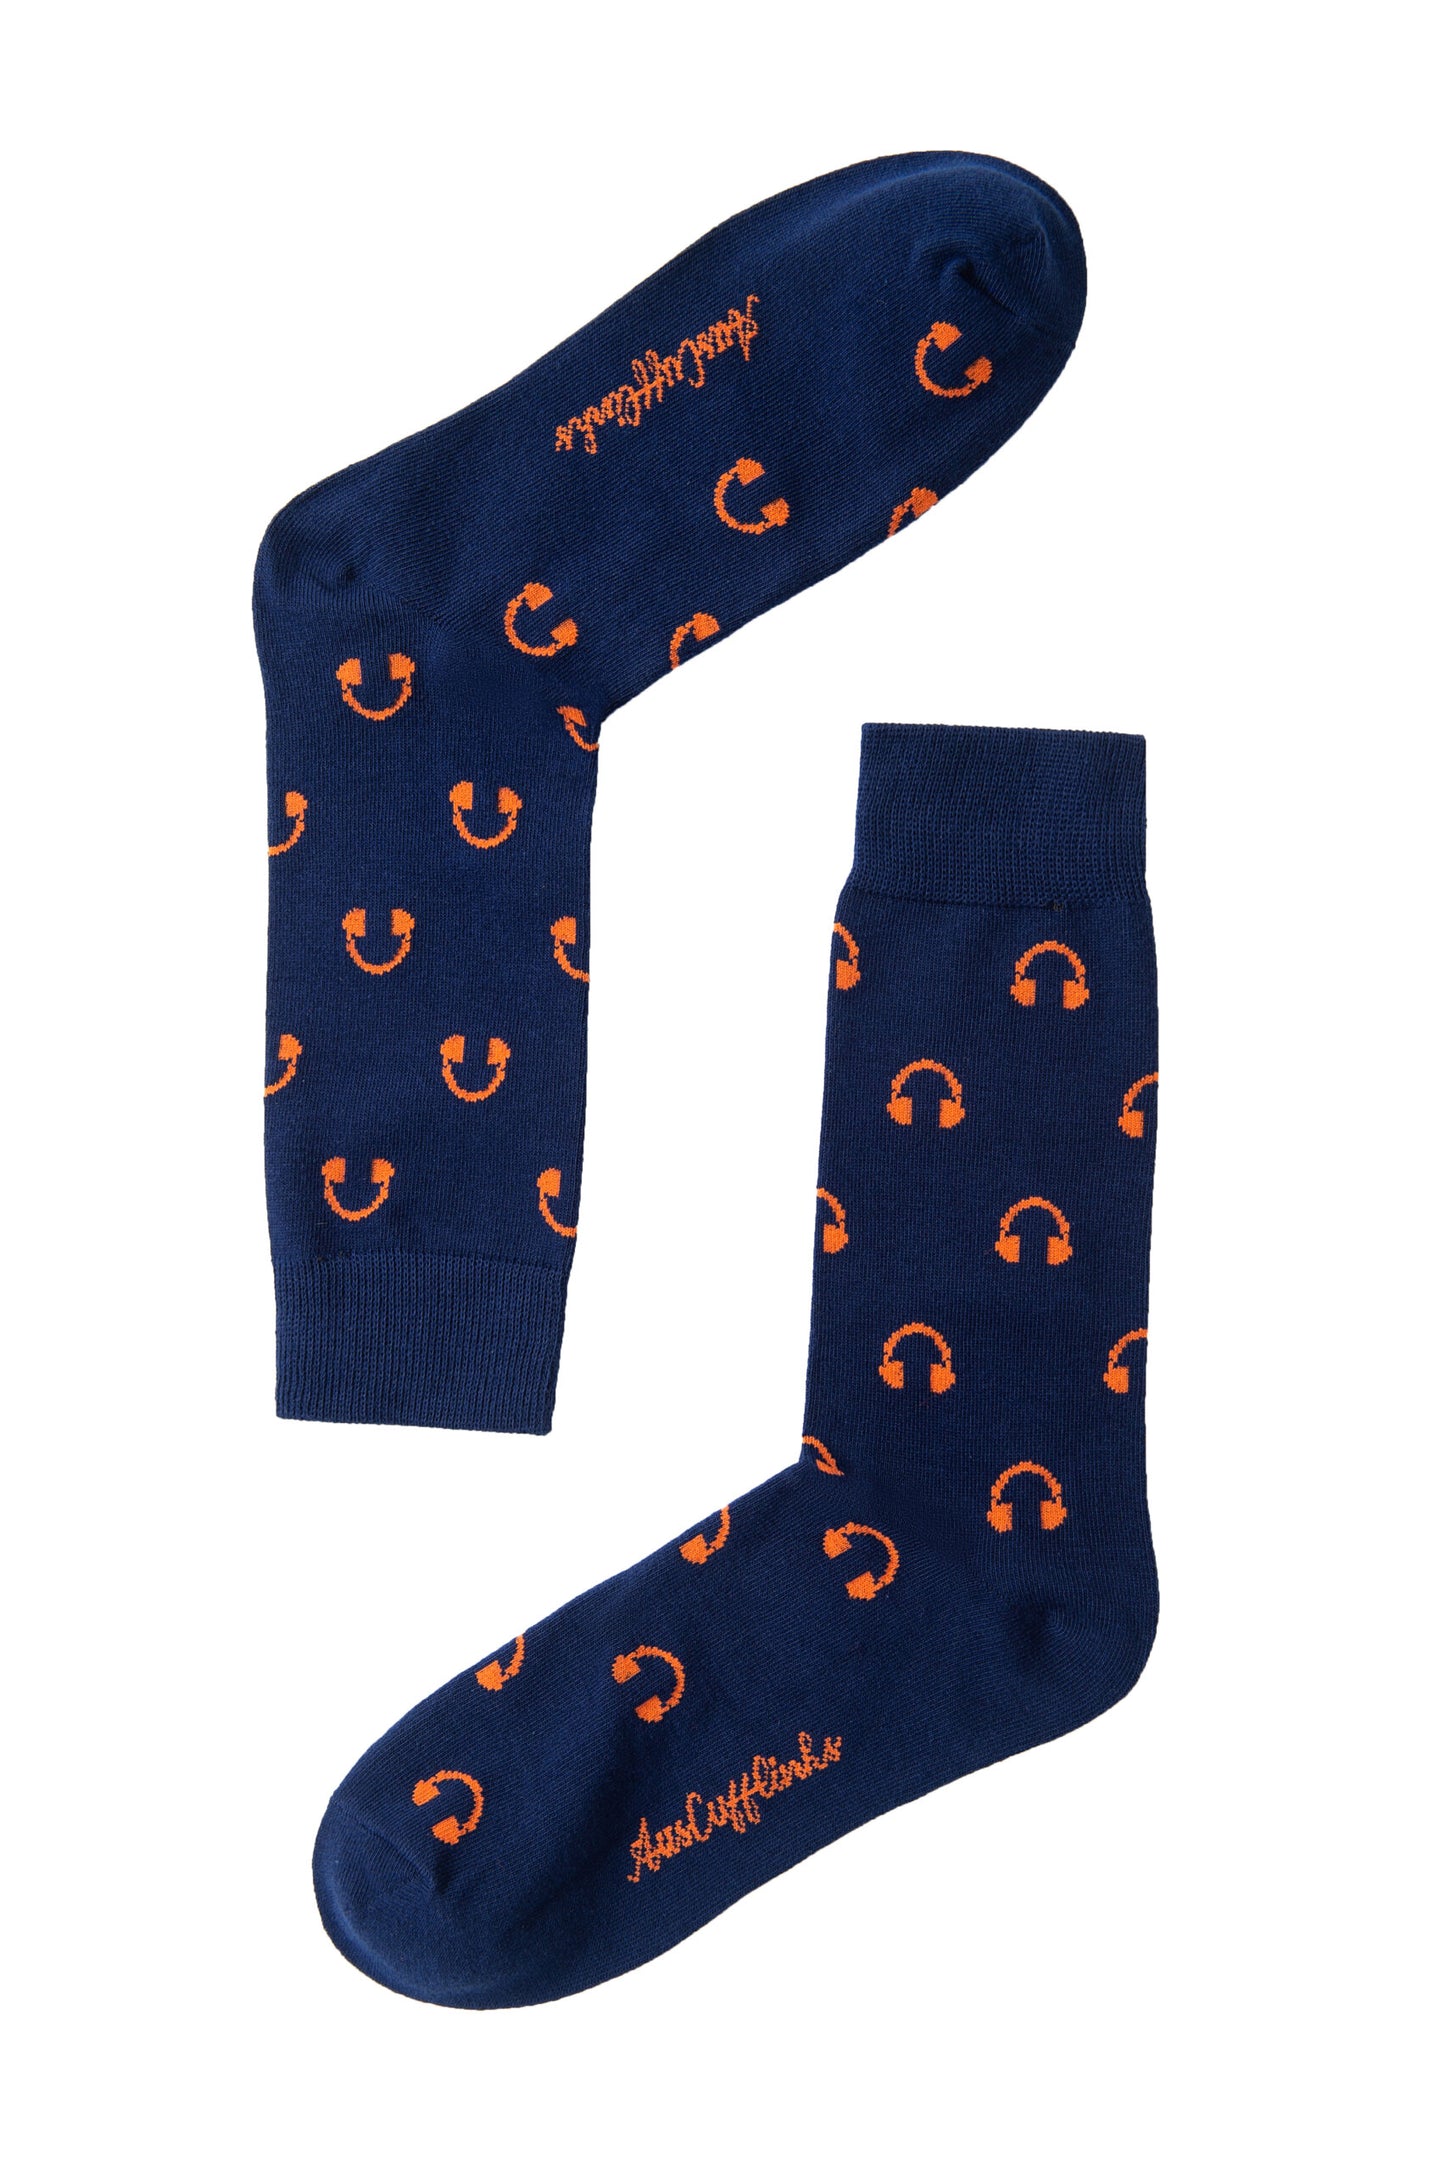 A pair of blue socks with orange Headphones Socks designs.